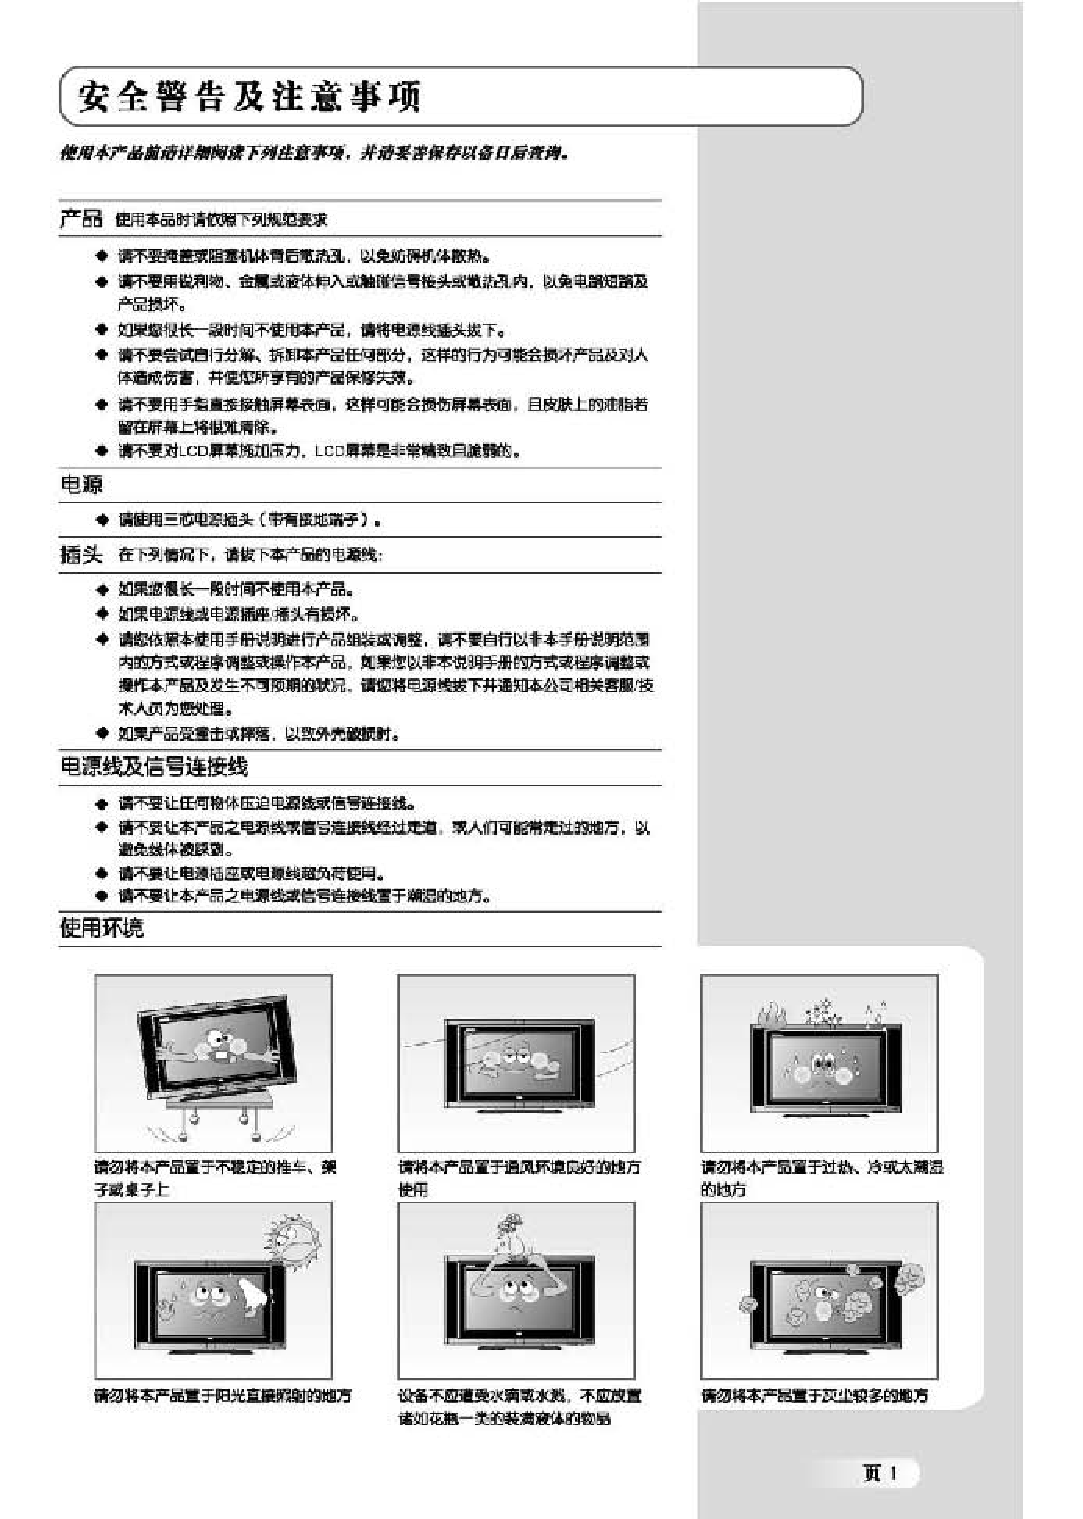 TCL LCD37B03-P 使用说明书 第2页